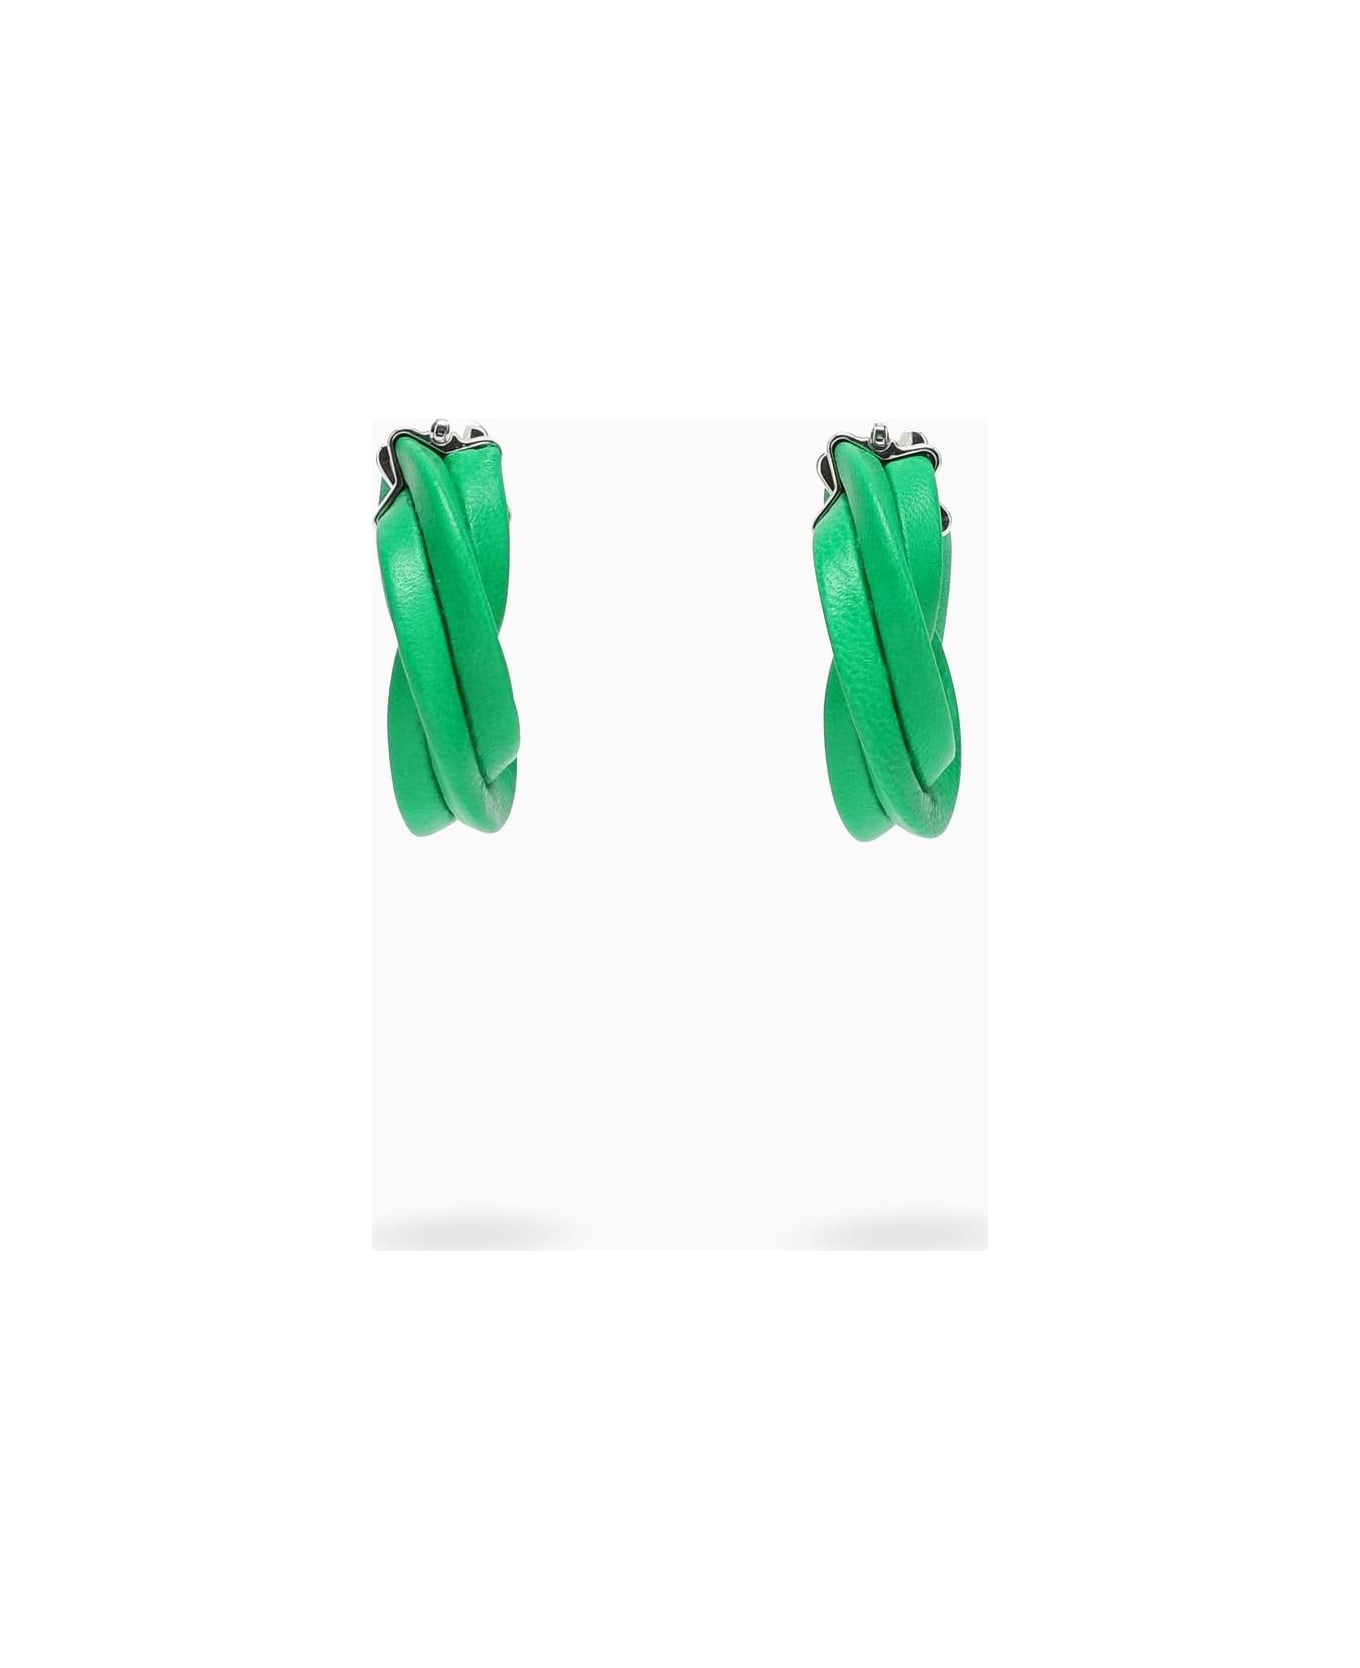 Bottega Veneta Green Twisted Hoop Earrings - Green イヤリング